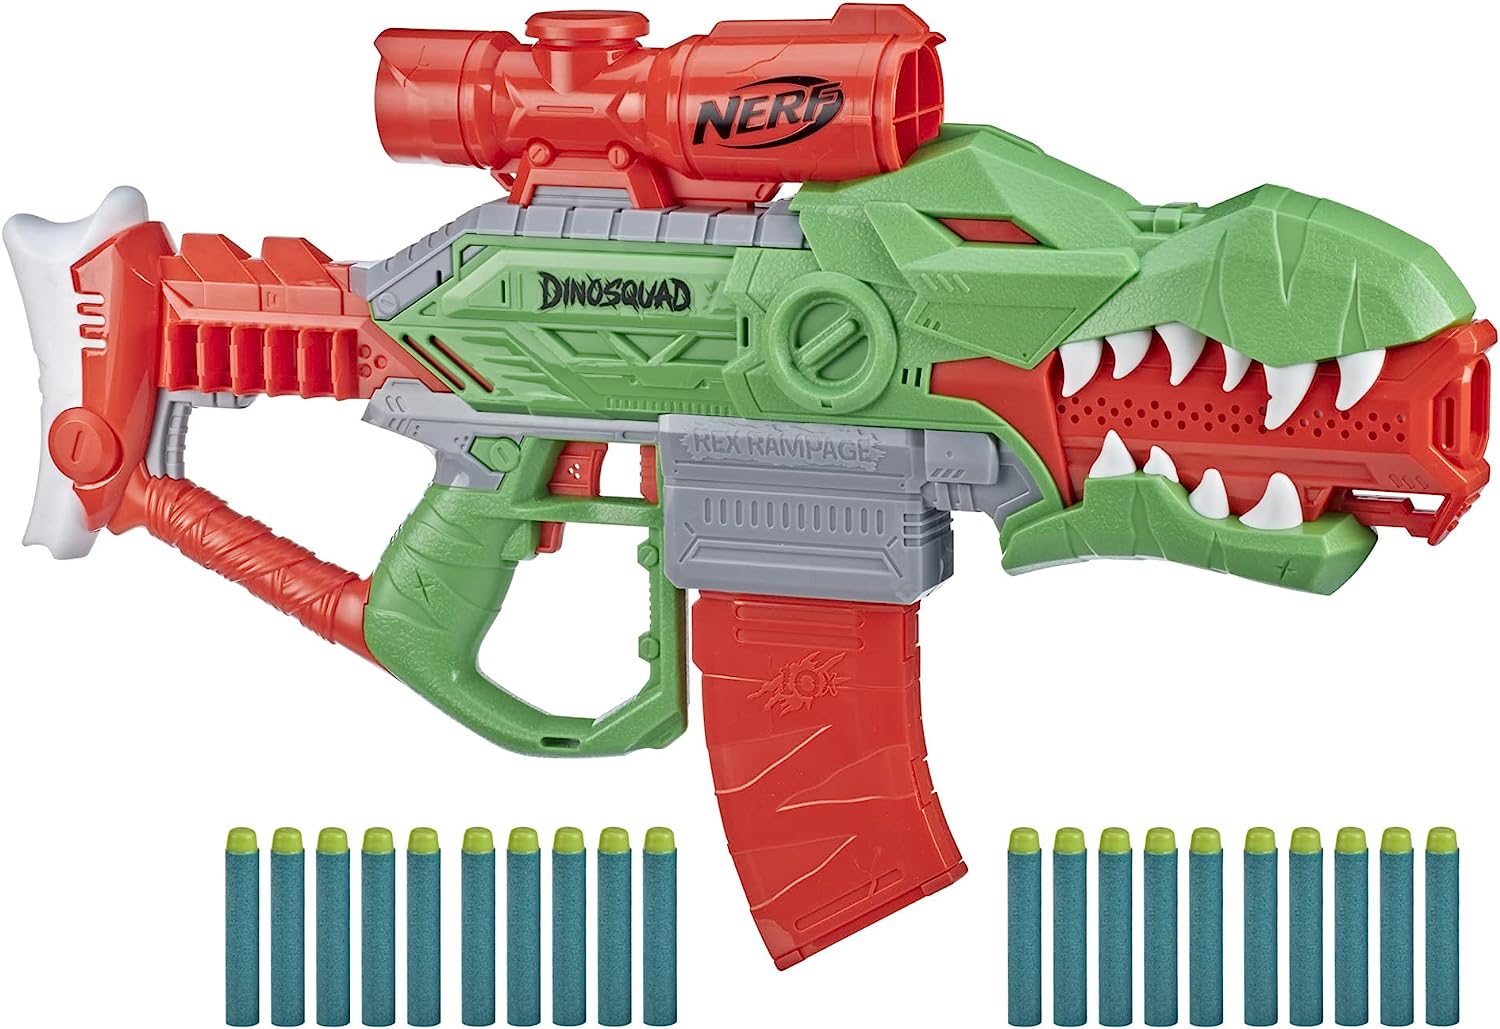 Nerf gun - semi automatic - powerful- NERF Ultra Select Fully Motorized  Blaster 195166119571